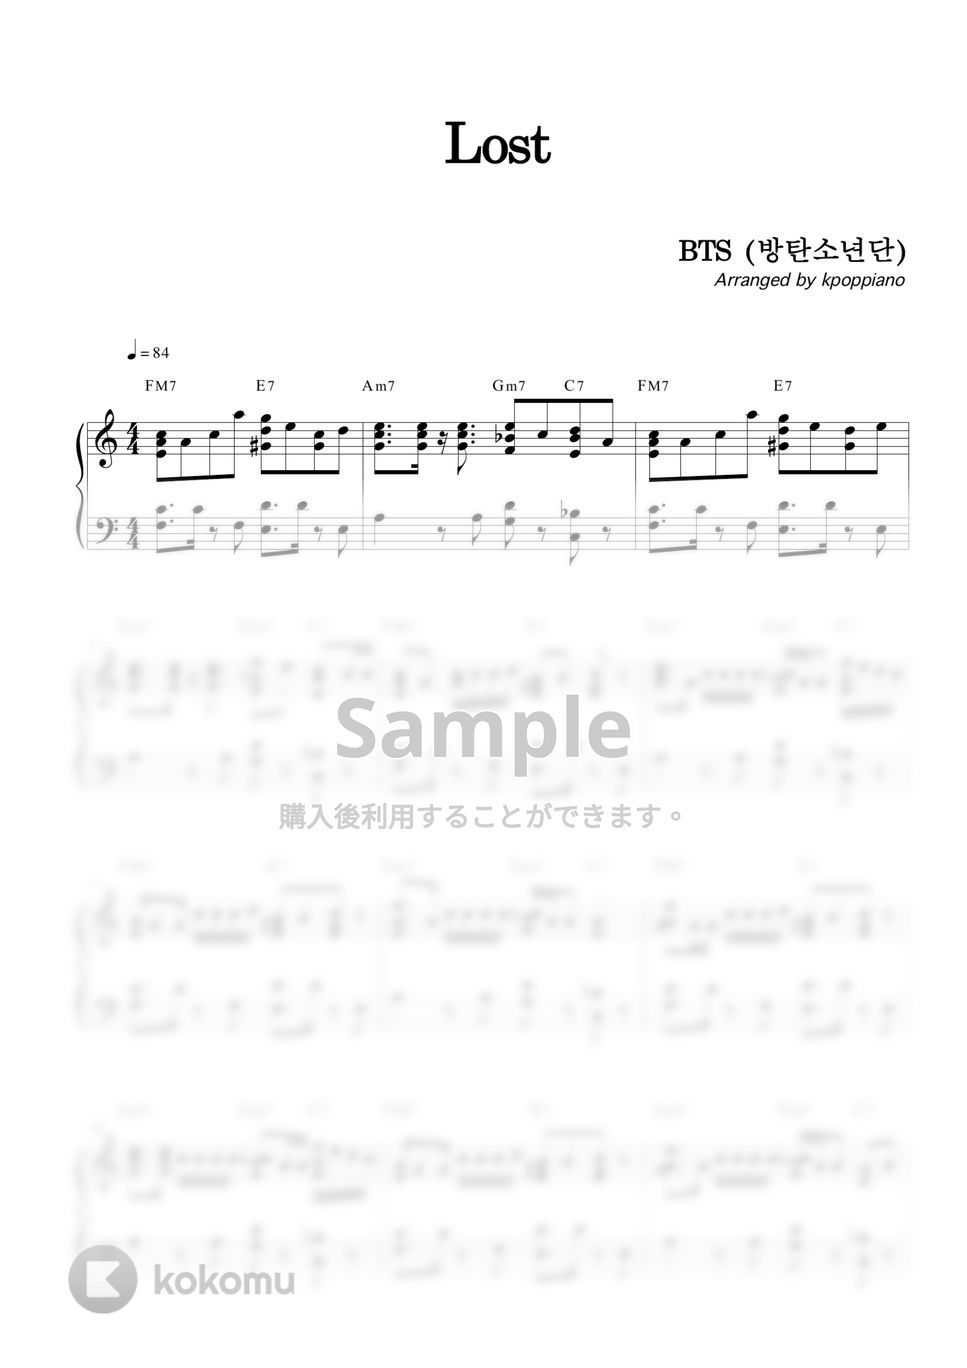 防弾少年団 (BTS) - Lost by KPOP PIANO